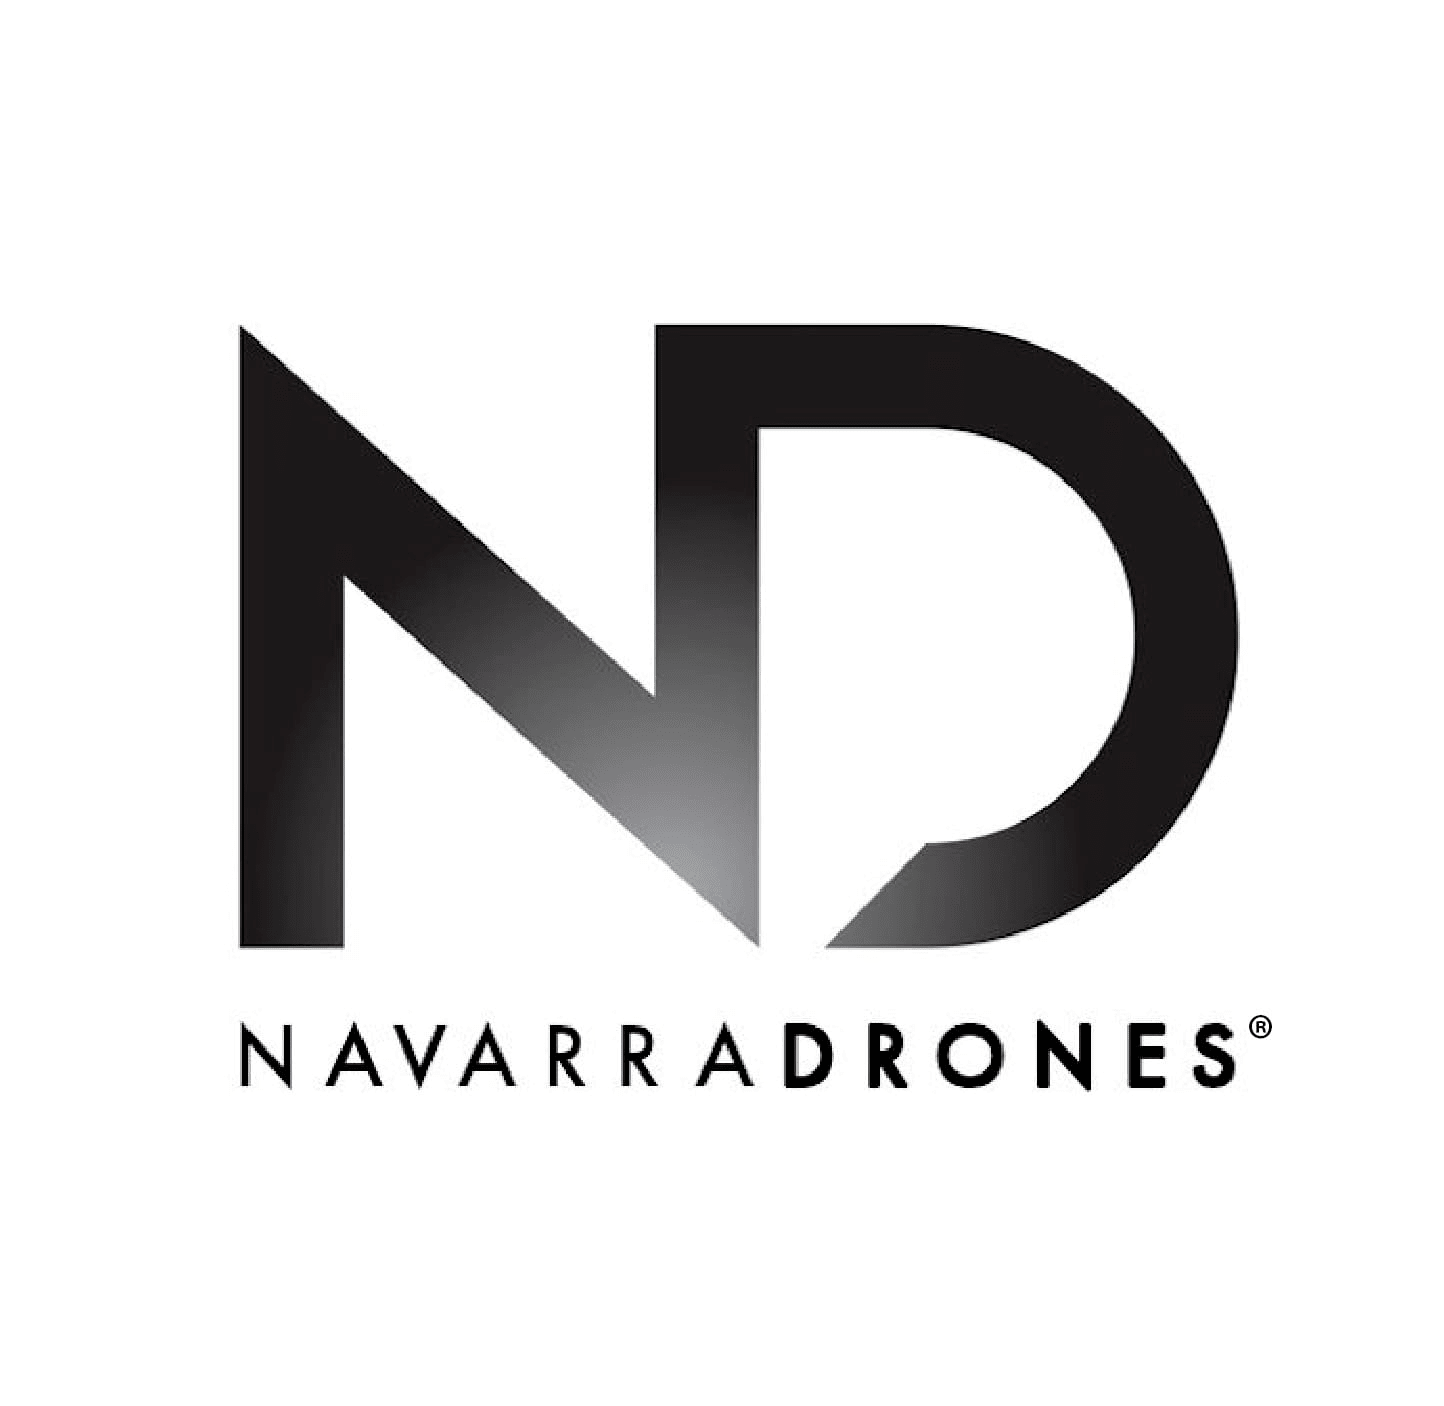 Navarradrones